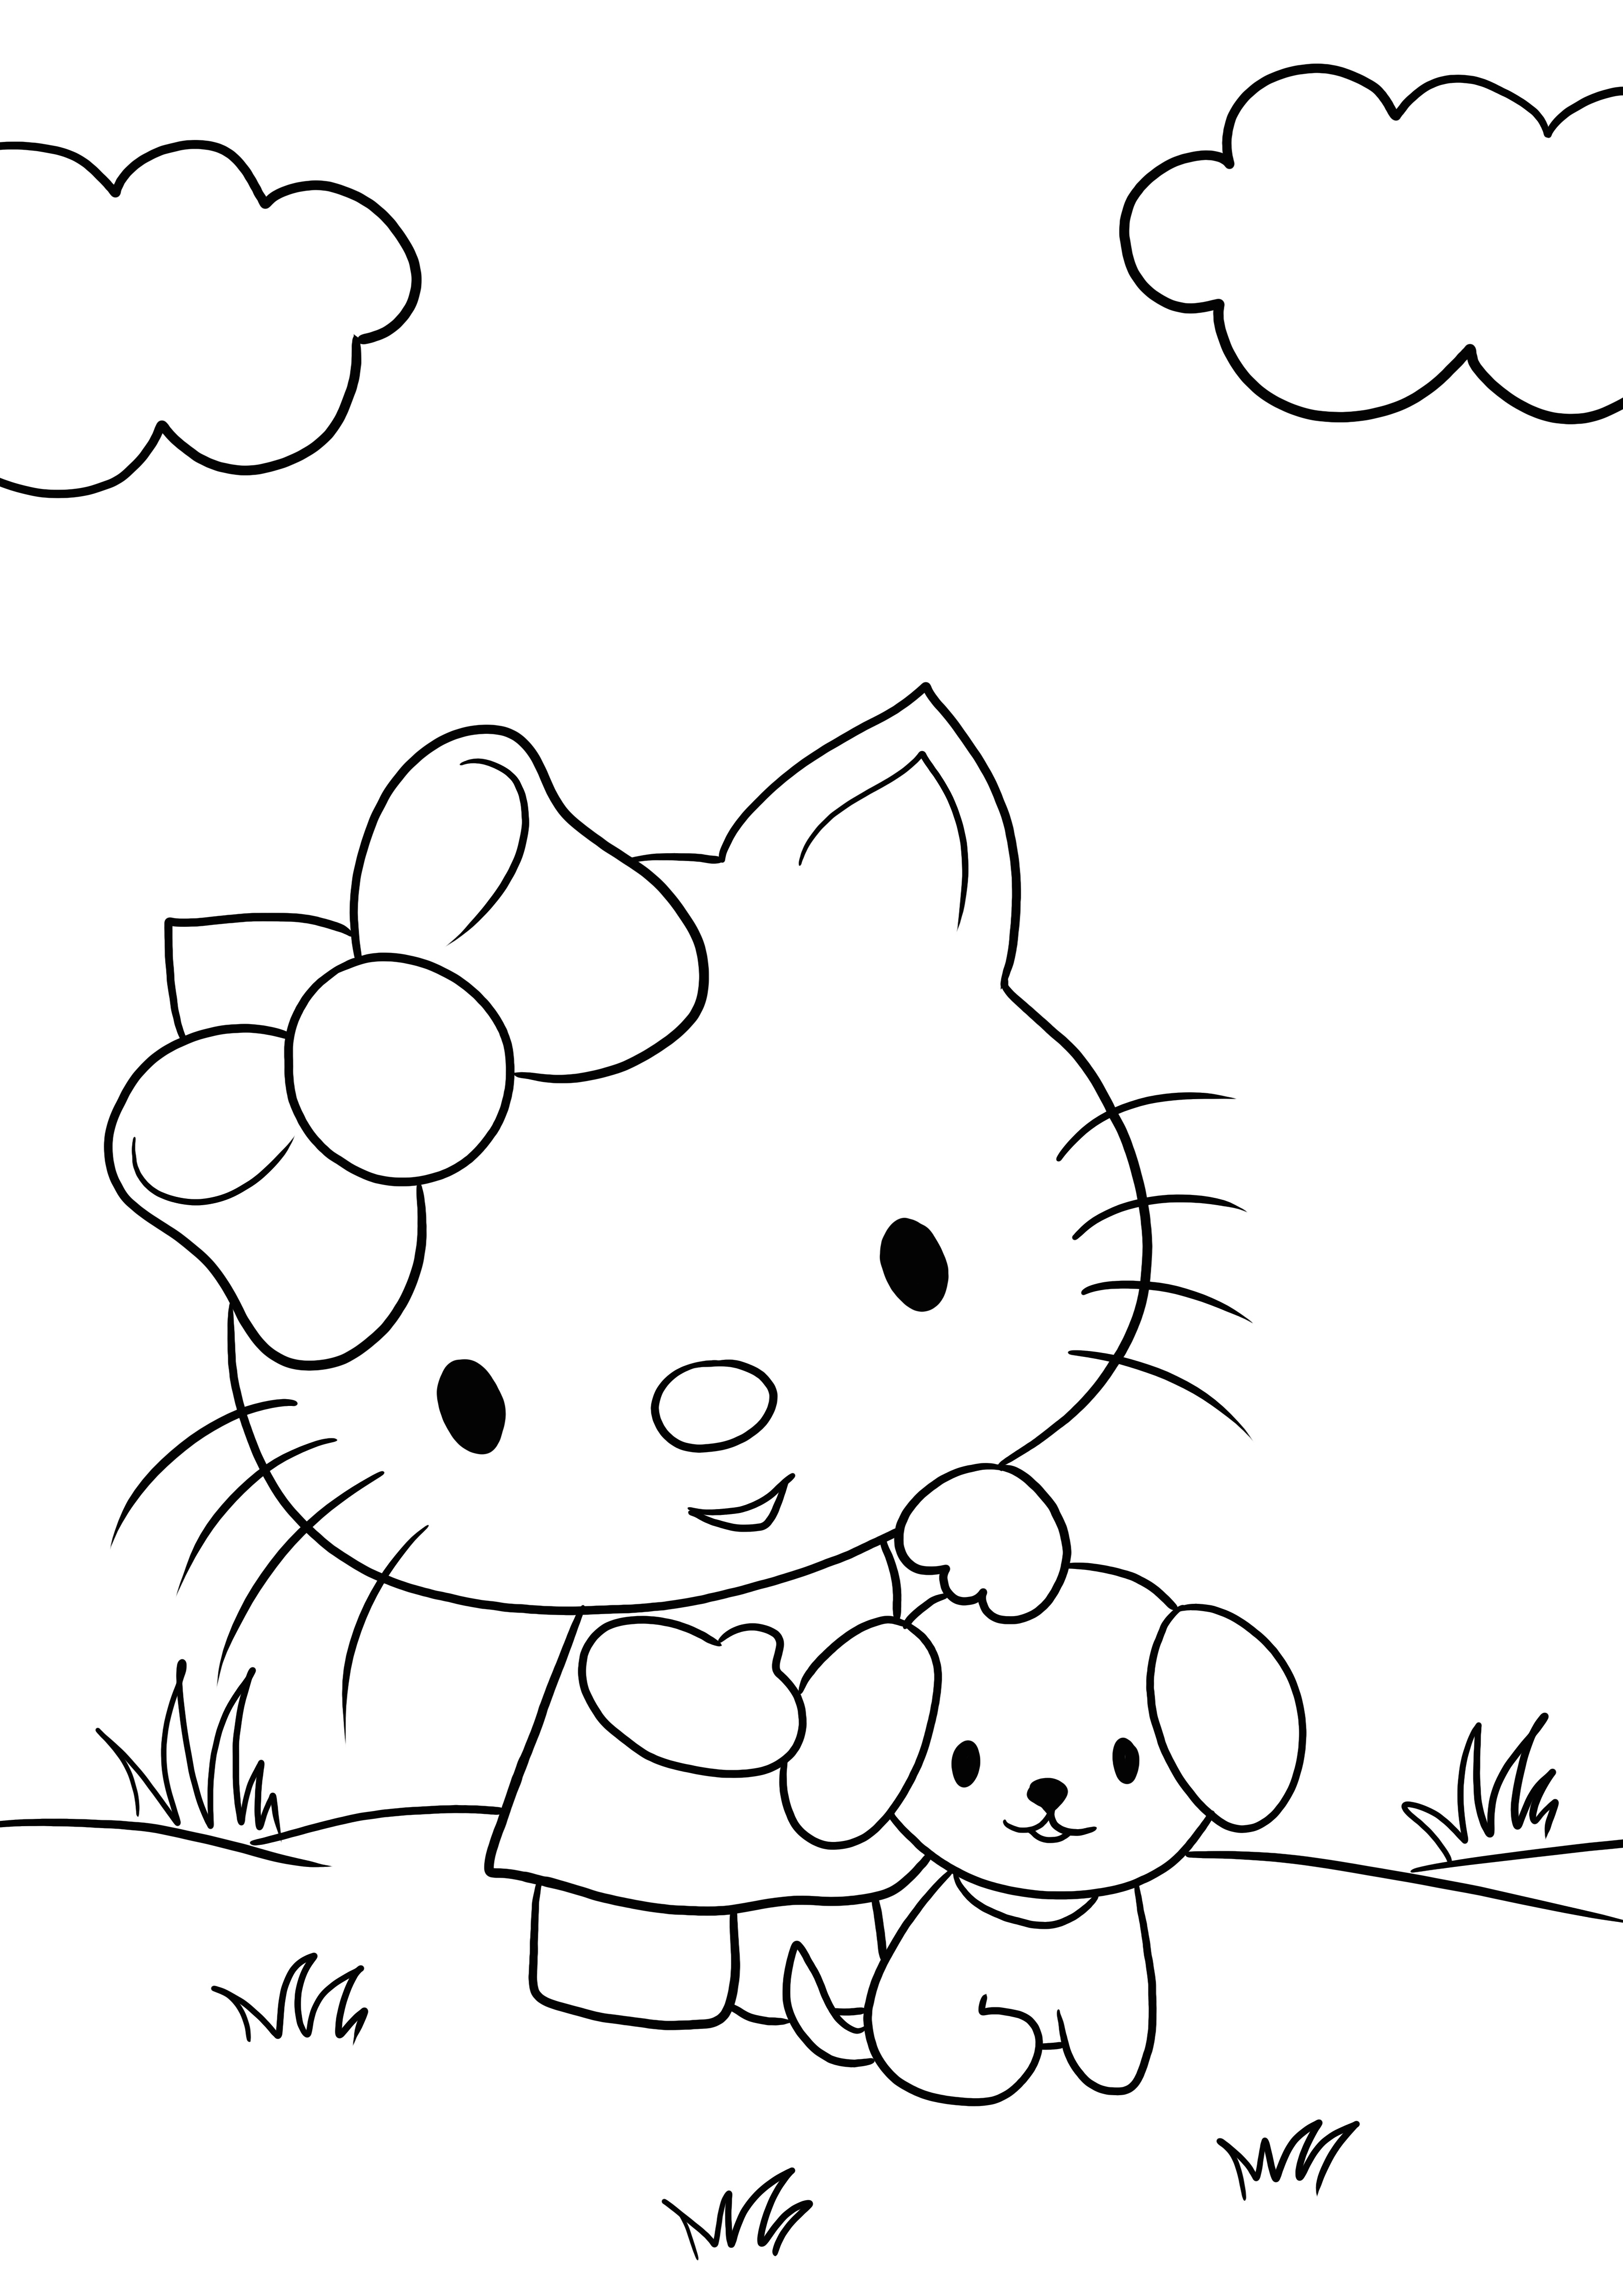 Çocuklar için boyama için Hello Kitty ve küçük köpek yavrusu olmadan yazdırılabilir